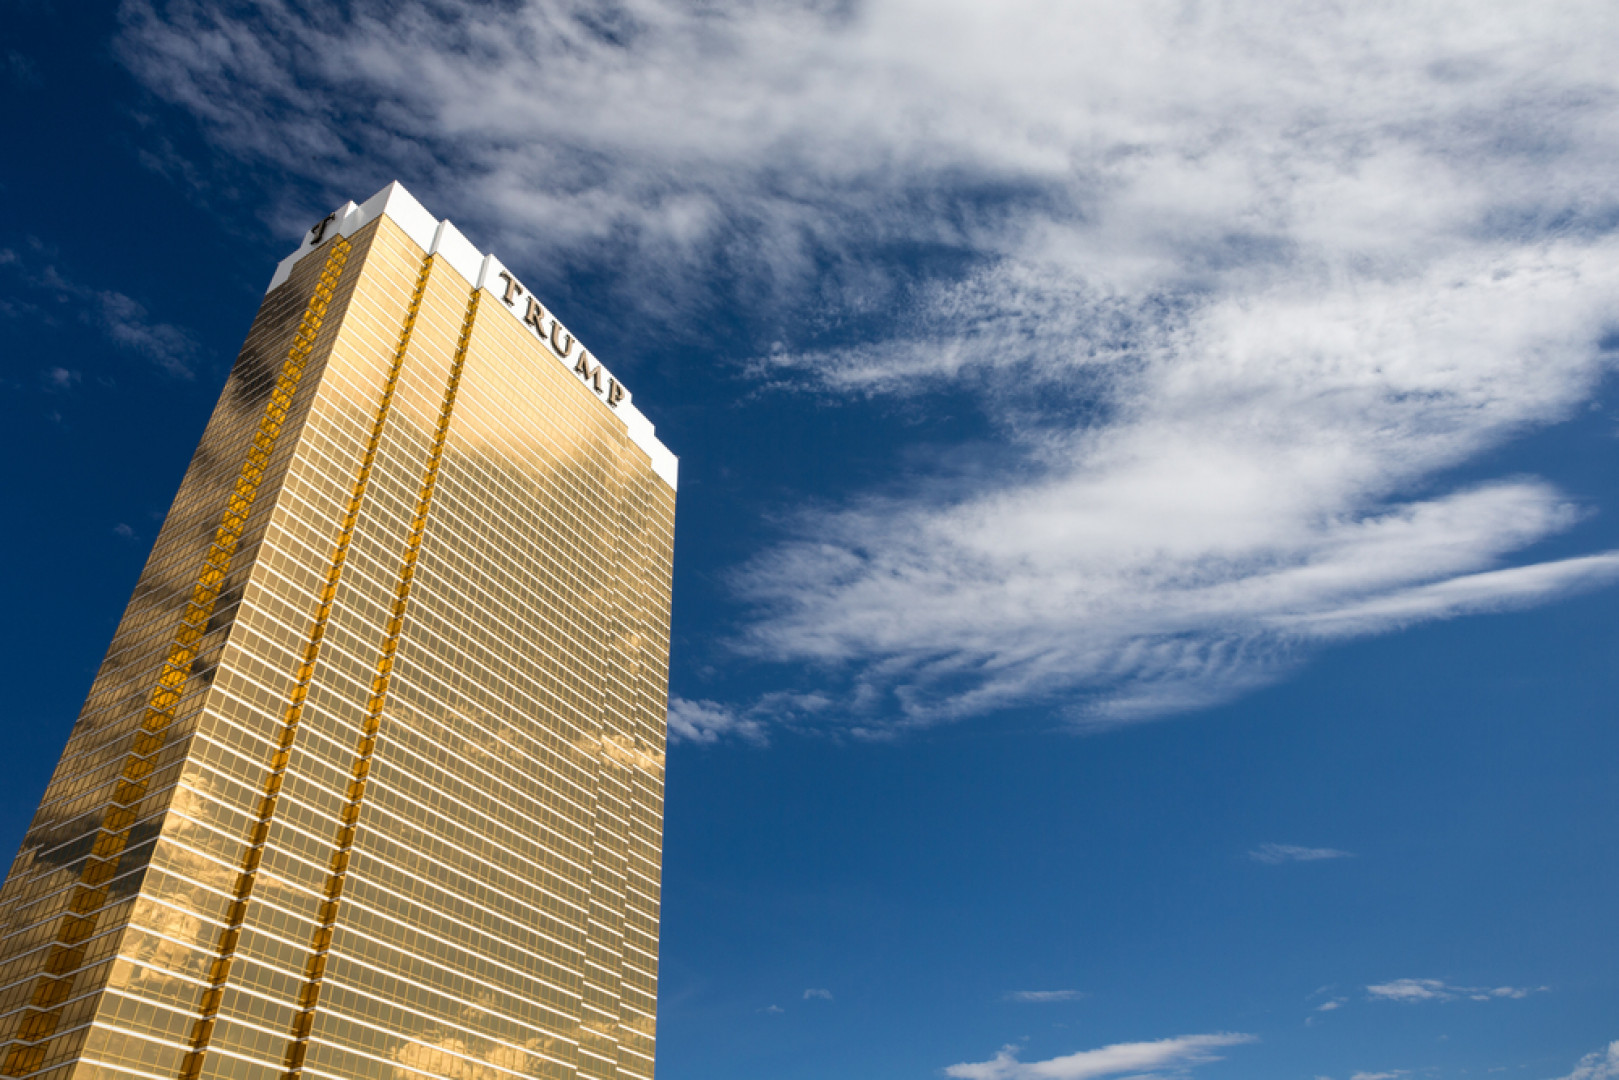 189-metrowy Trump International Hotel w Las Vegas powstał na podstawie projektu pracowni Bergman, Walls & Associates. Obiekt cieszył się taką popularnością, że w planach było nawet... postawienie obok bliźniaczej wieży, fot. shutterstock